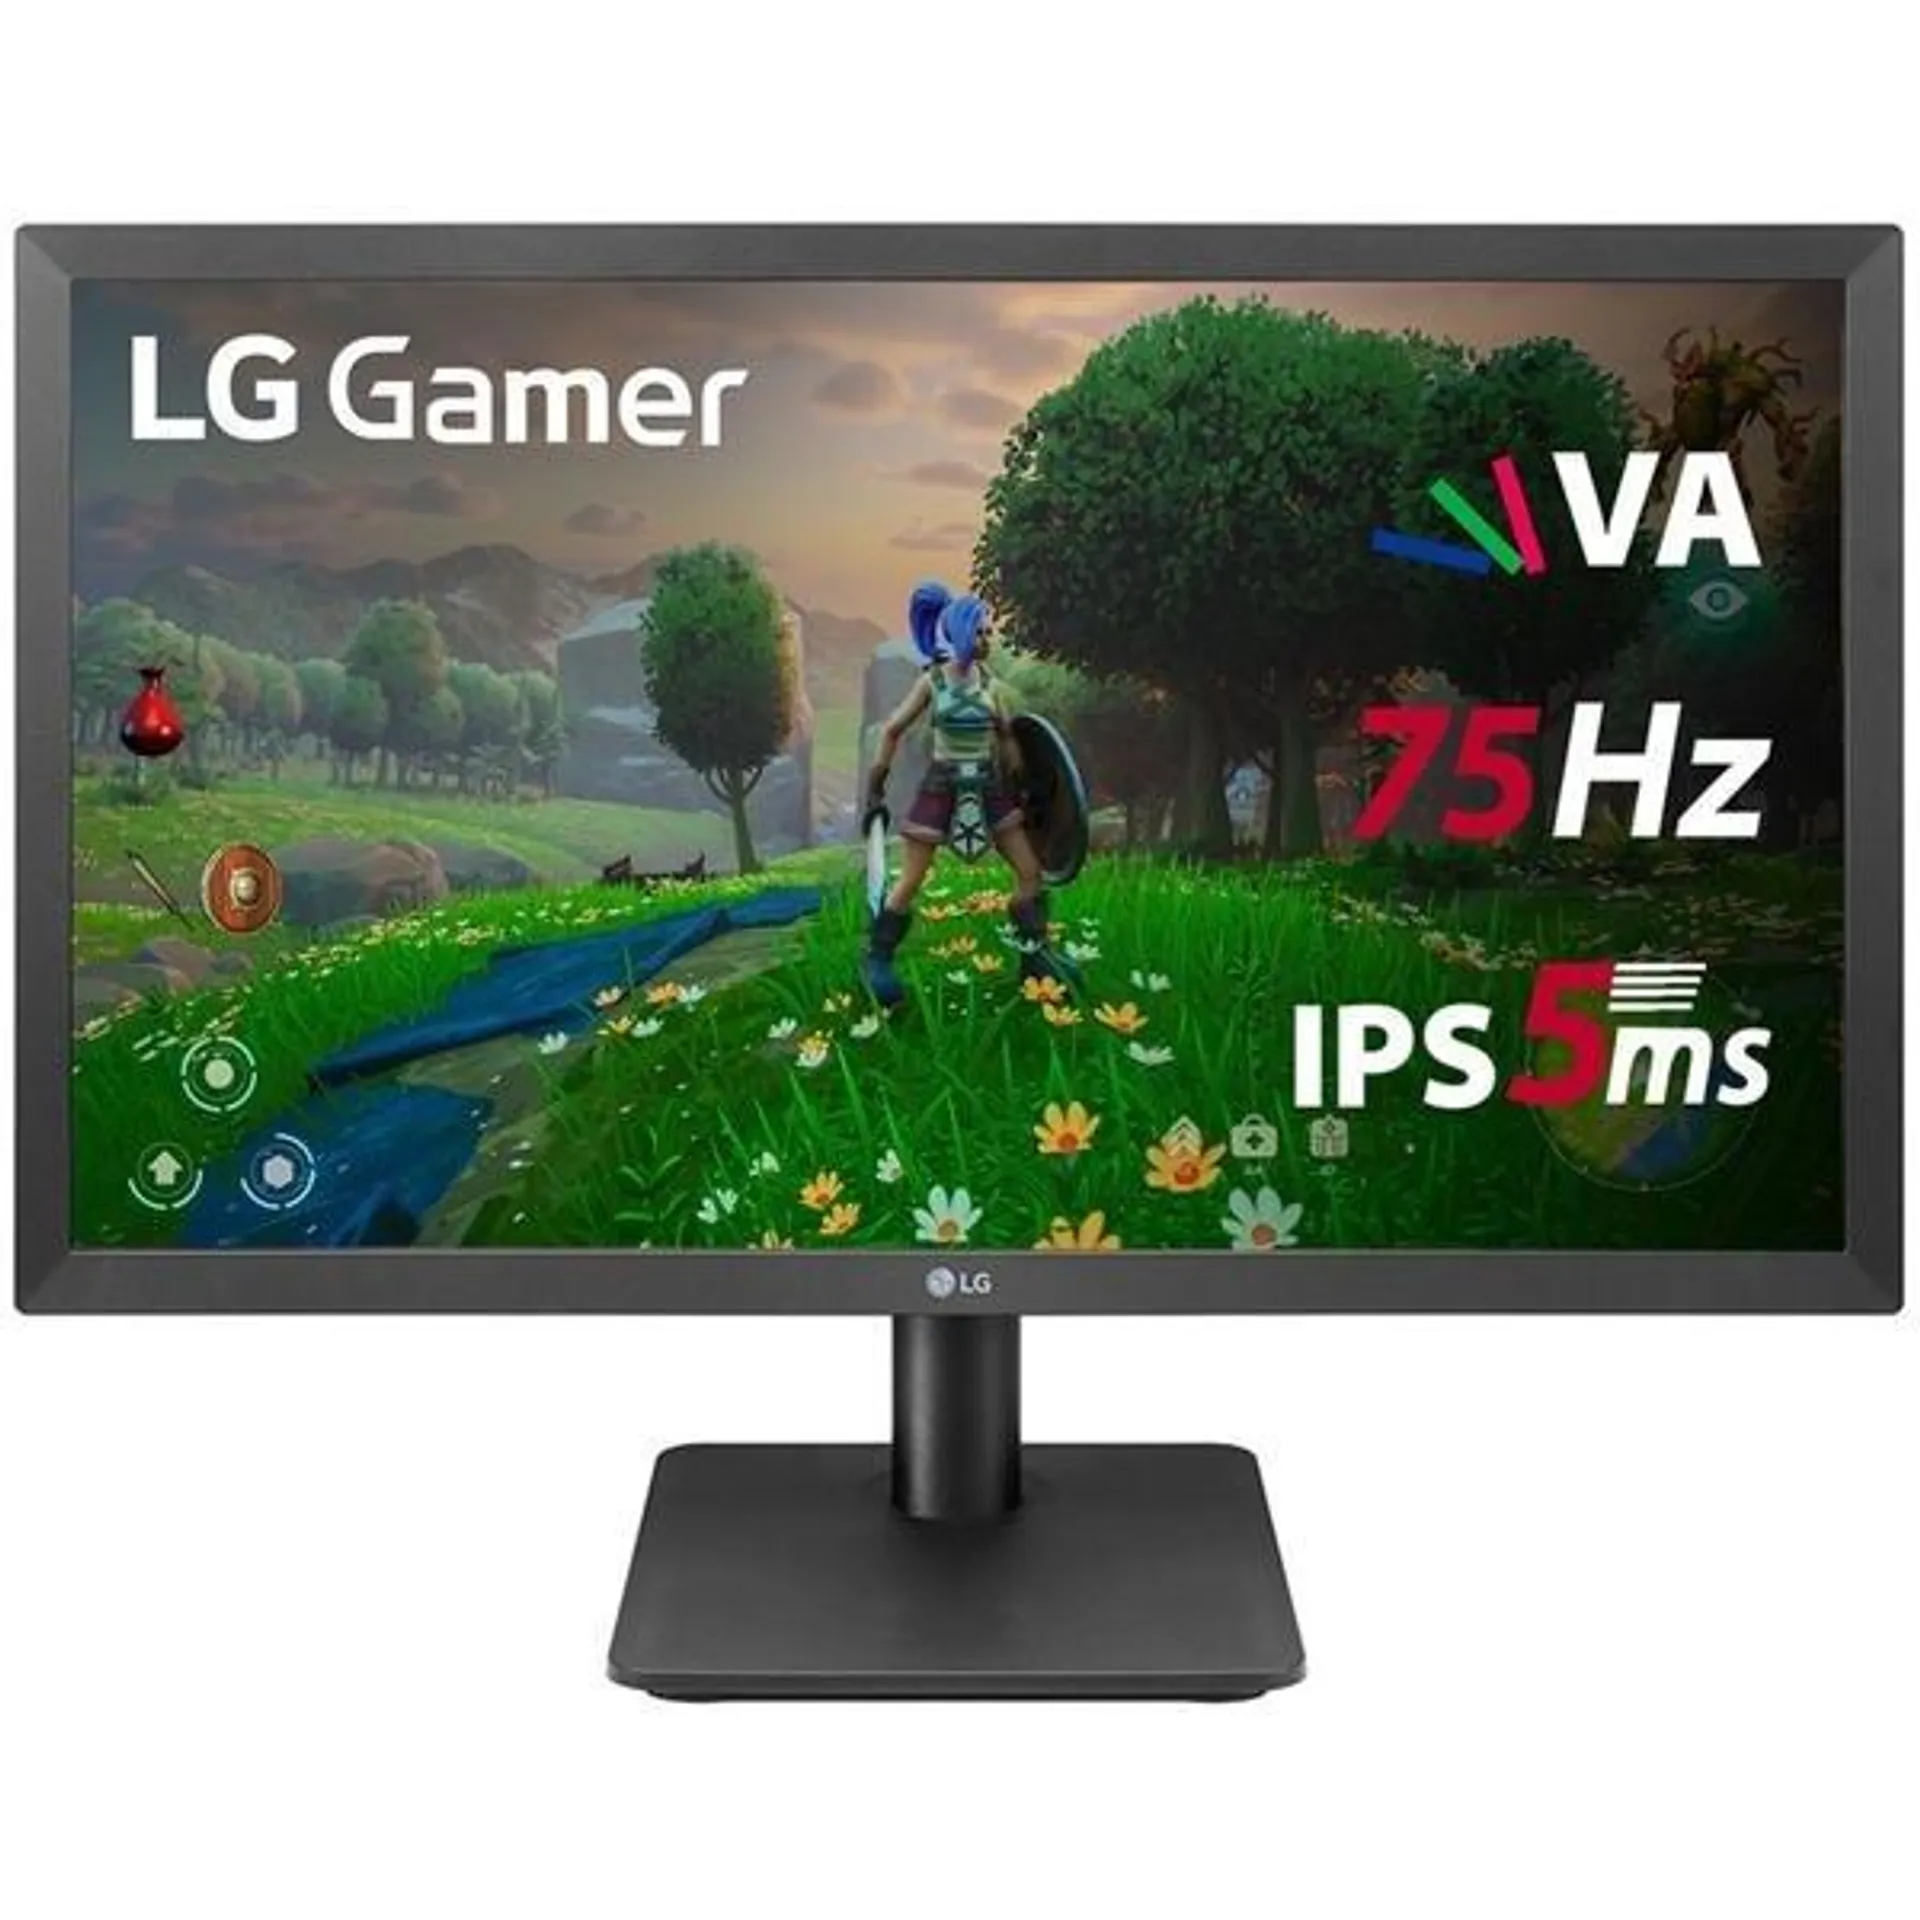 Monitor Gamer LED, Tela de 21,5", Tempo de resposta 5ms, Taxa de atualização de 75Hz, HDMI, Full HD, 22MP410-B, LG - CX 1 UN